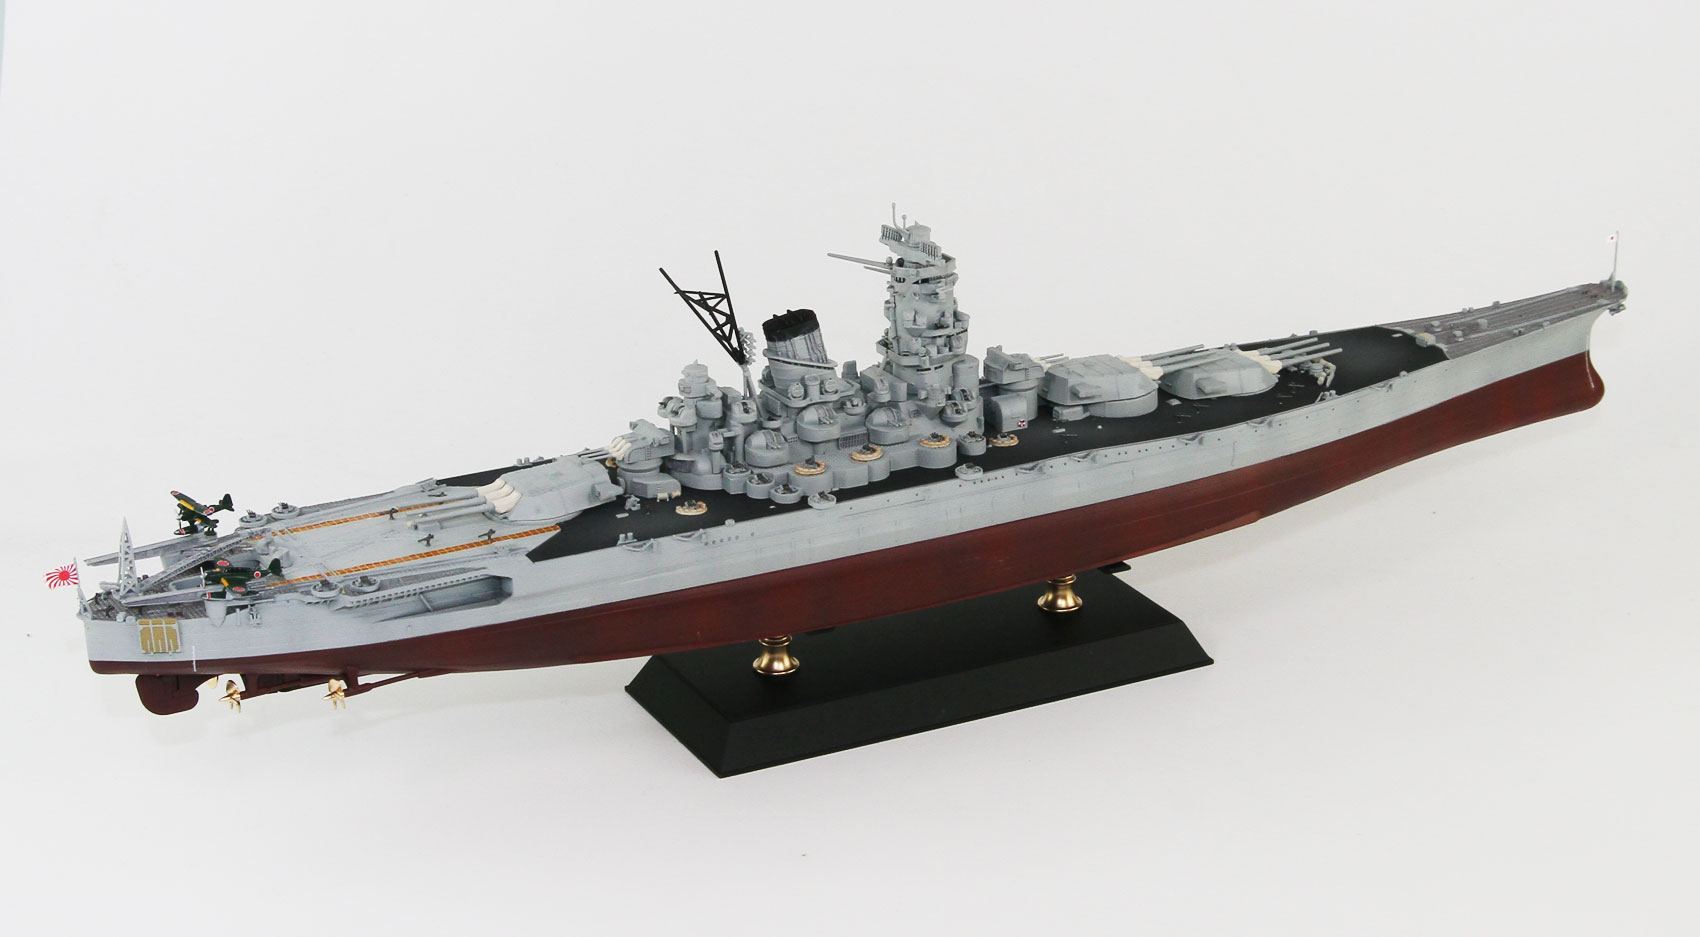 1/700 日本海軍 戦艦 武蔵 レイテ沖海戦時 - ウインドウを閉じる